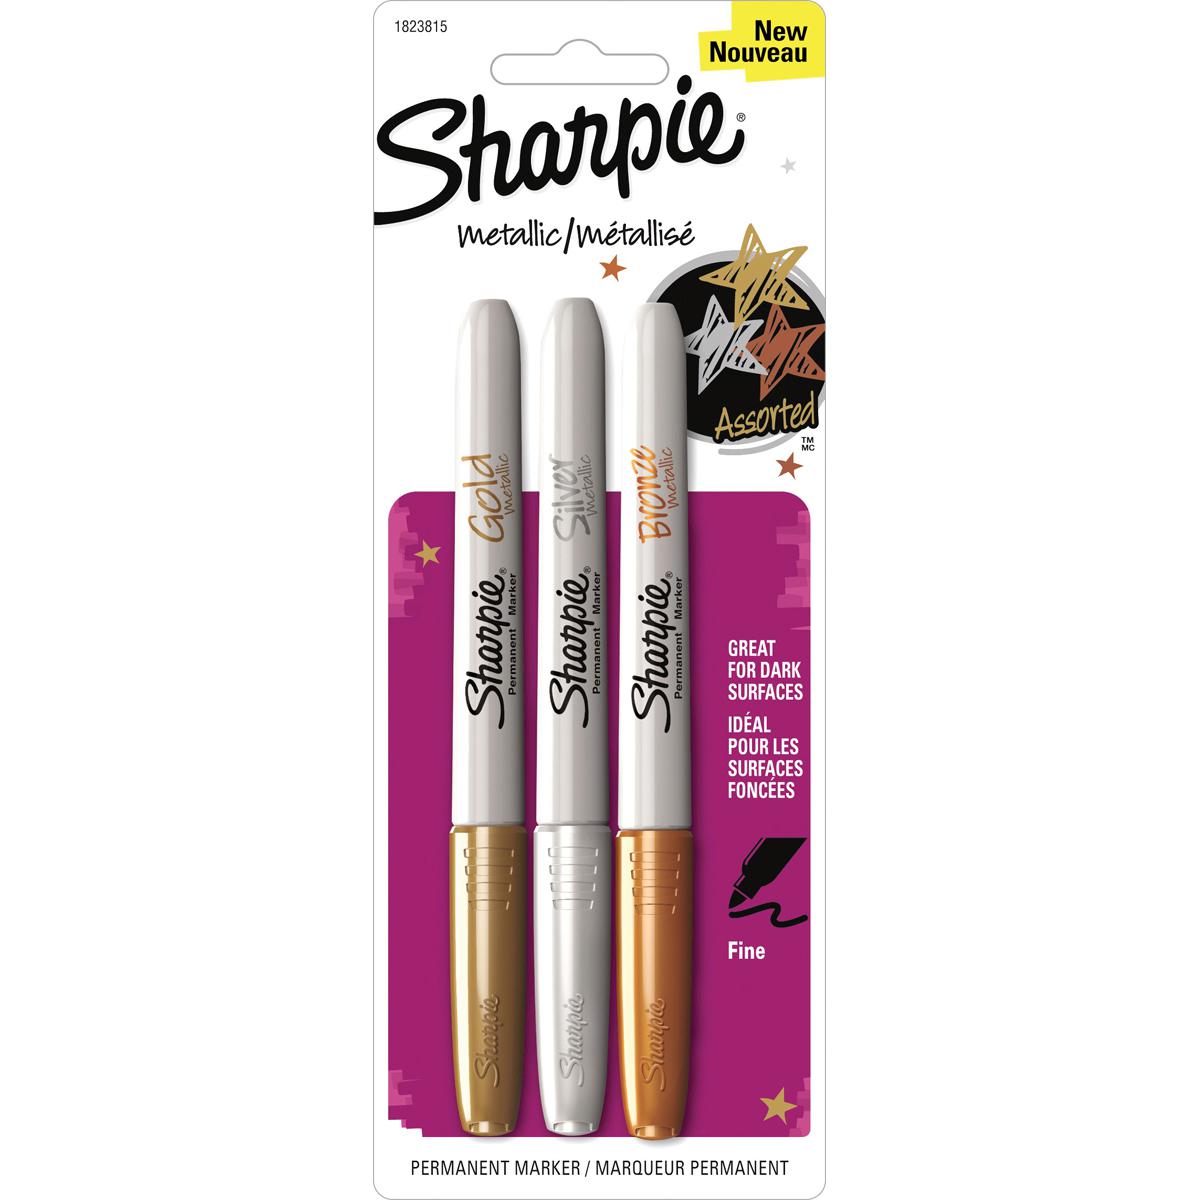  Sharpie® Metallic Permanent Markers 